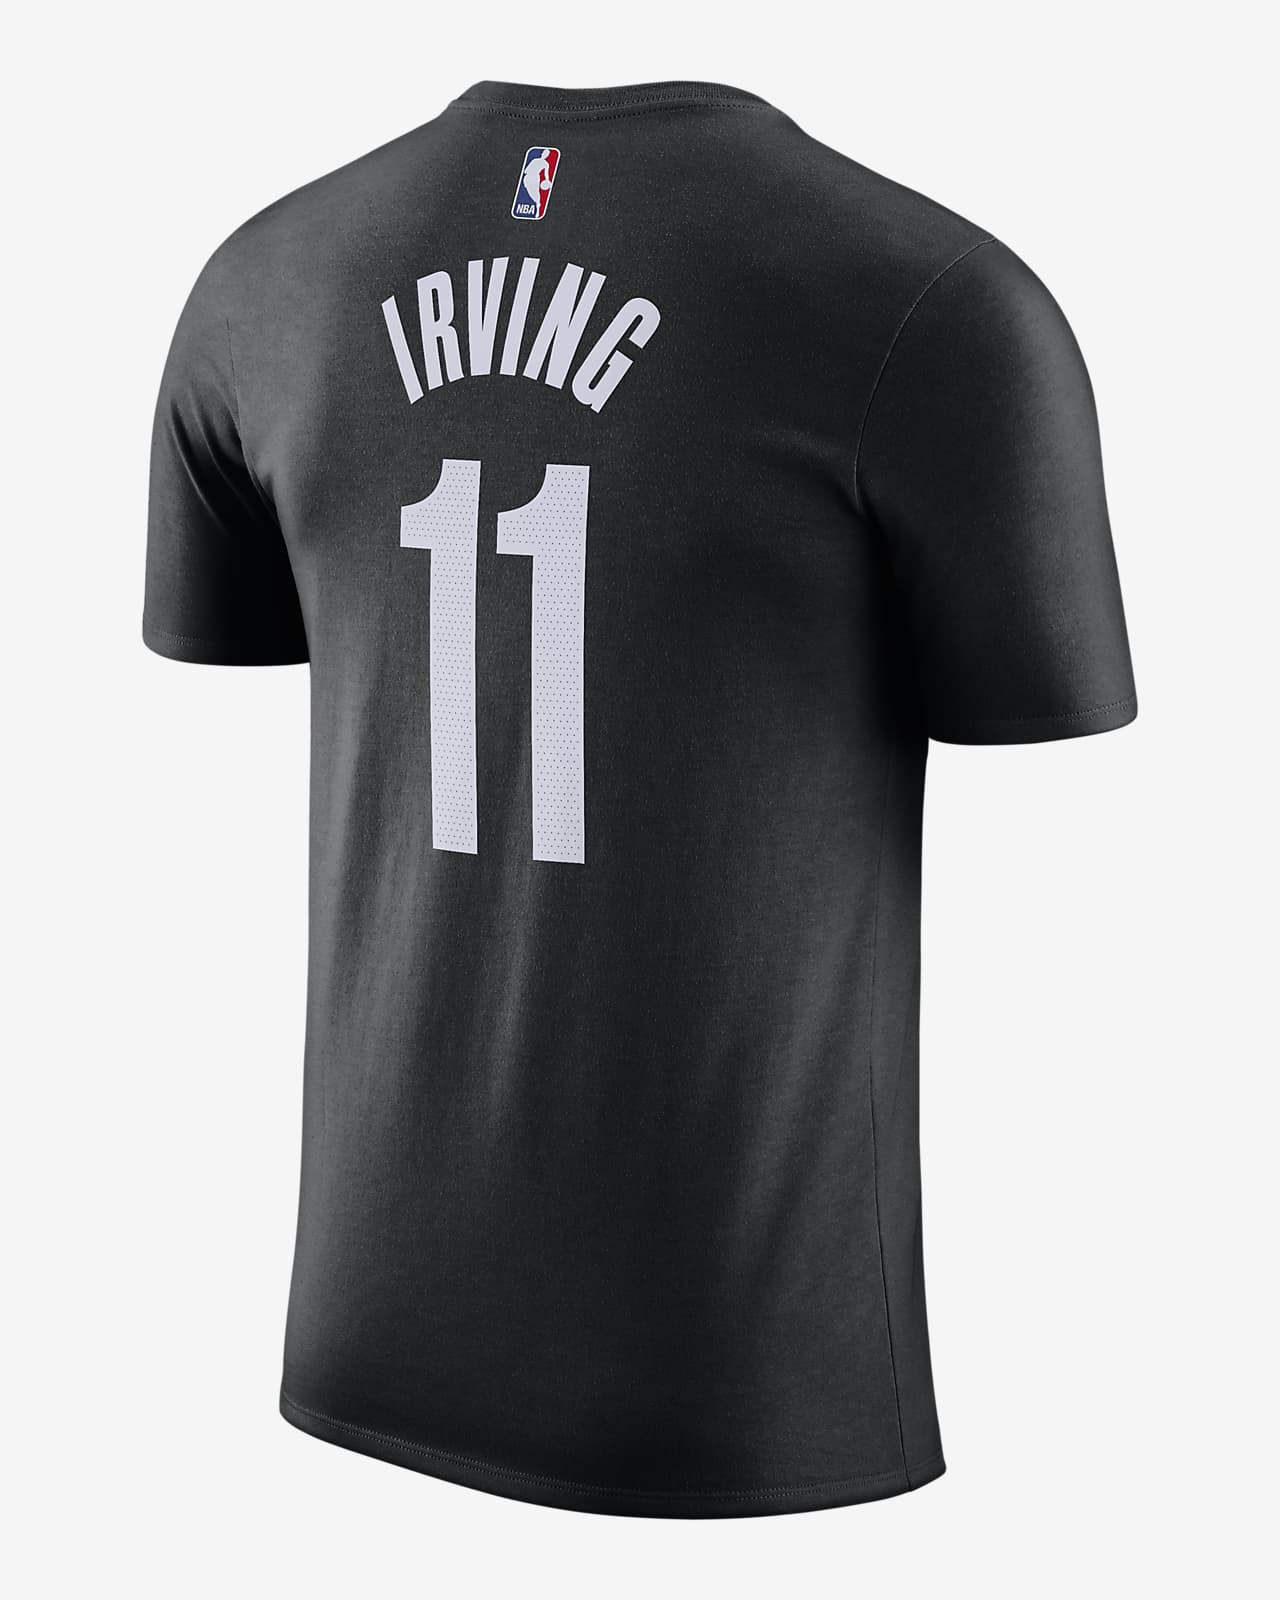 Playera Nike NBA para hombre Kyrie Irving Nets. Nike.com